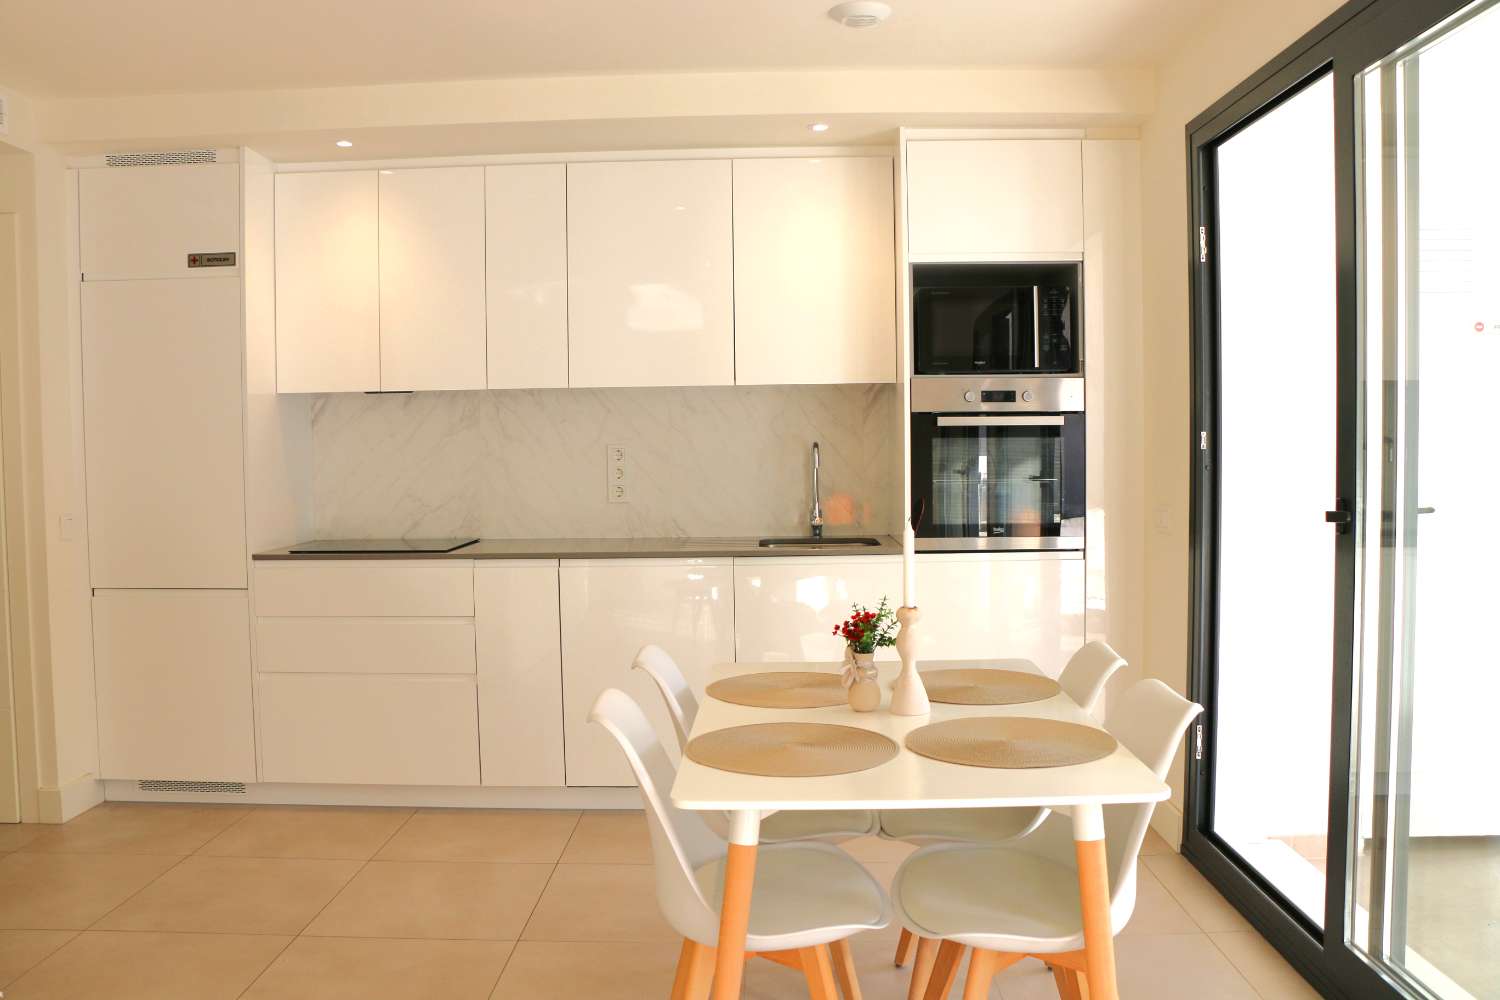 Neue luxuriös ausgestattete Wohnung in einer kleinen Anlage für einen wunderschönen Strandurlaub in Nerja, Südspanien.